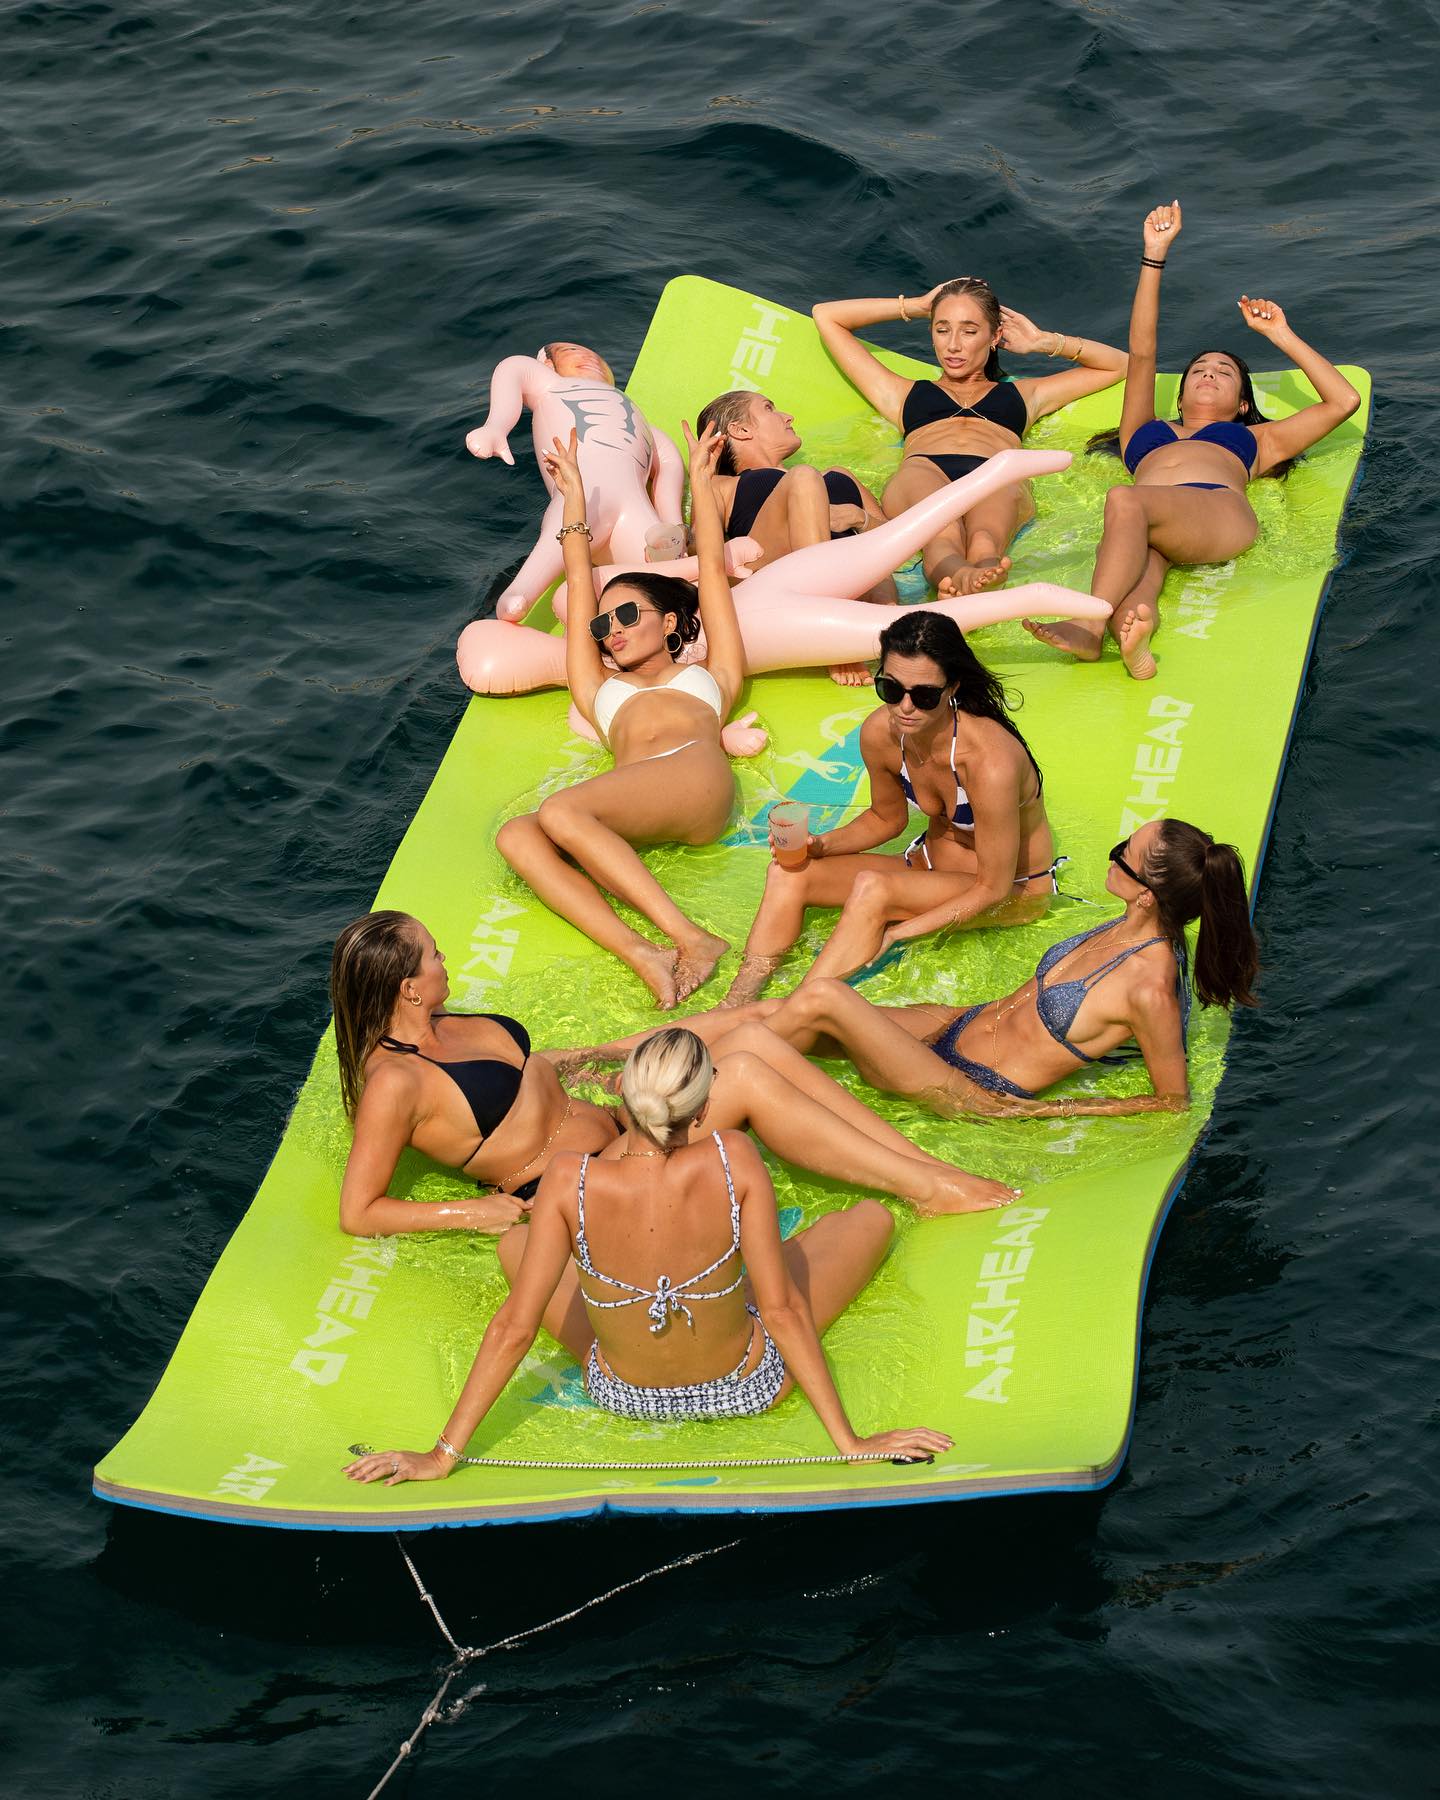 Девочки в бикини и резиновые мужчины: «Мисс Вселенная — 2012» Оливия Калпо устроила девичник на яхте. Топ фото папарацци, сделанные накануне свадьбы Оливии Калпо